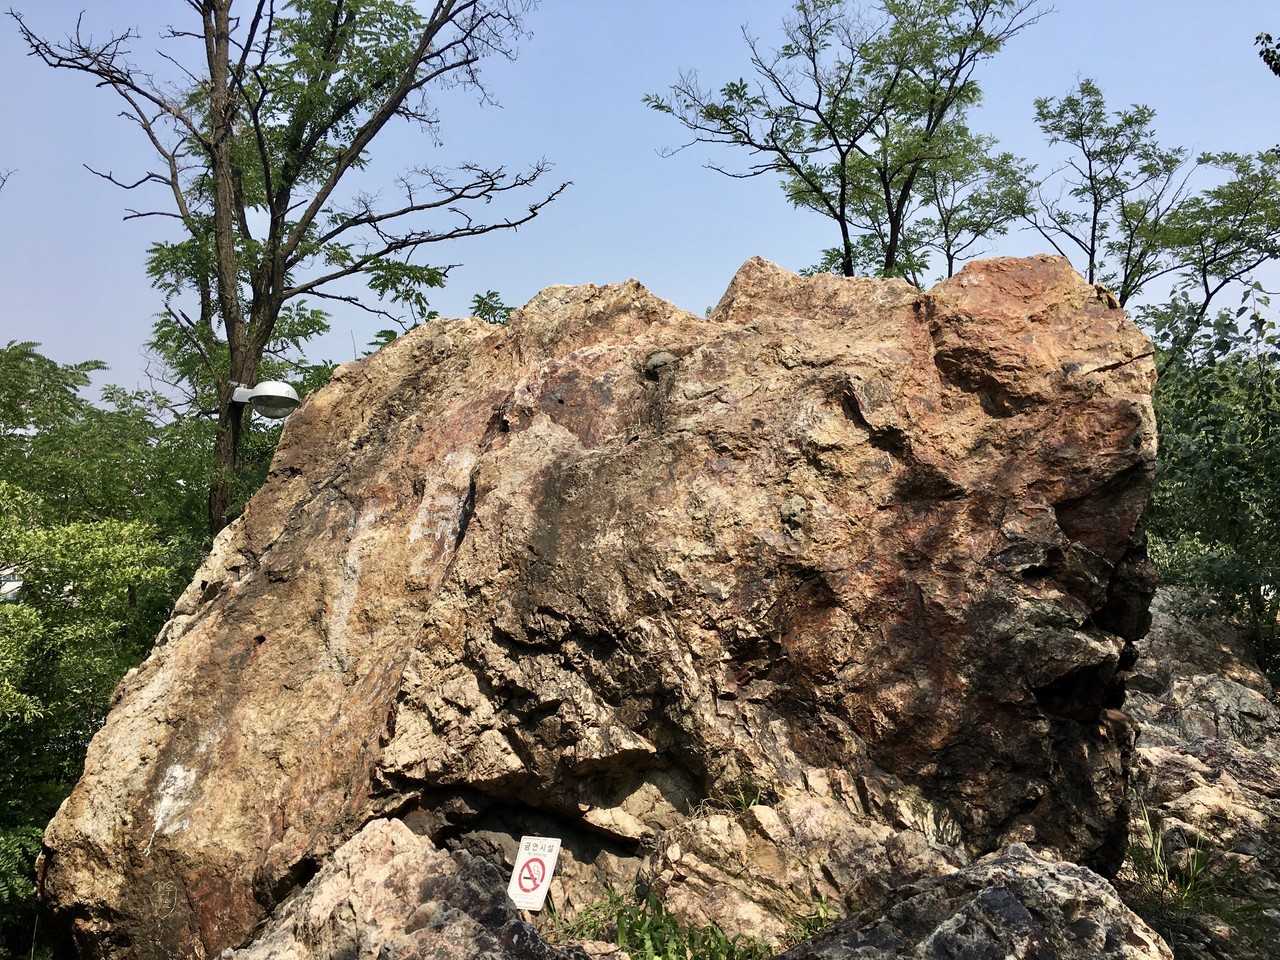 석바위 공원에 자리한 석암산 정상 부위 큰 바위(금연 표시가 이채롭다), 2020ⓒ유광식